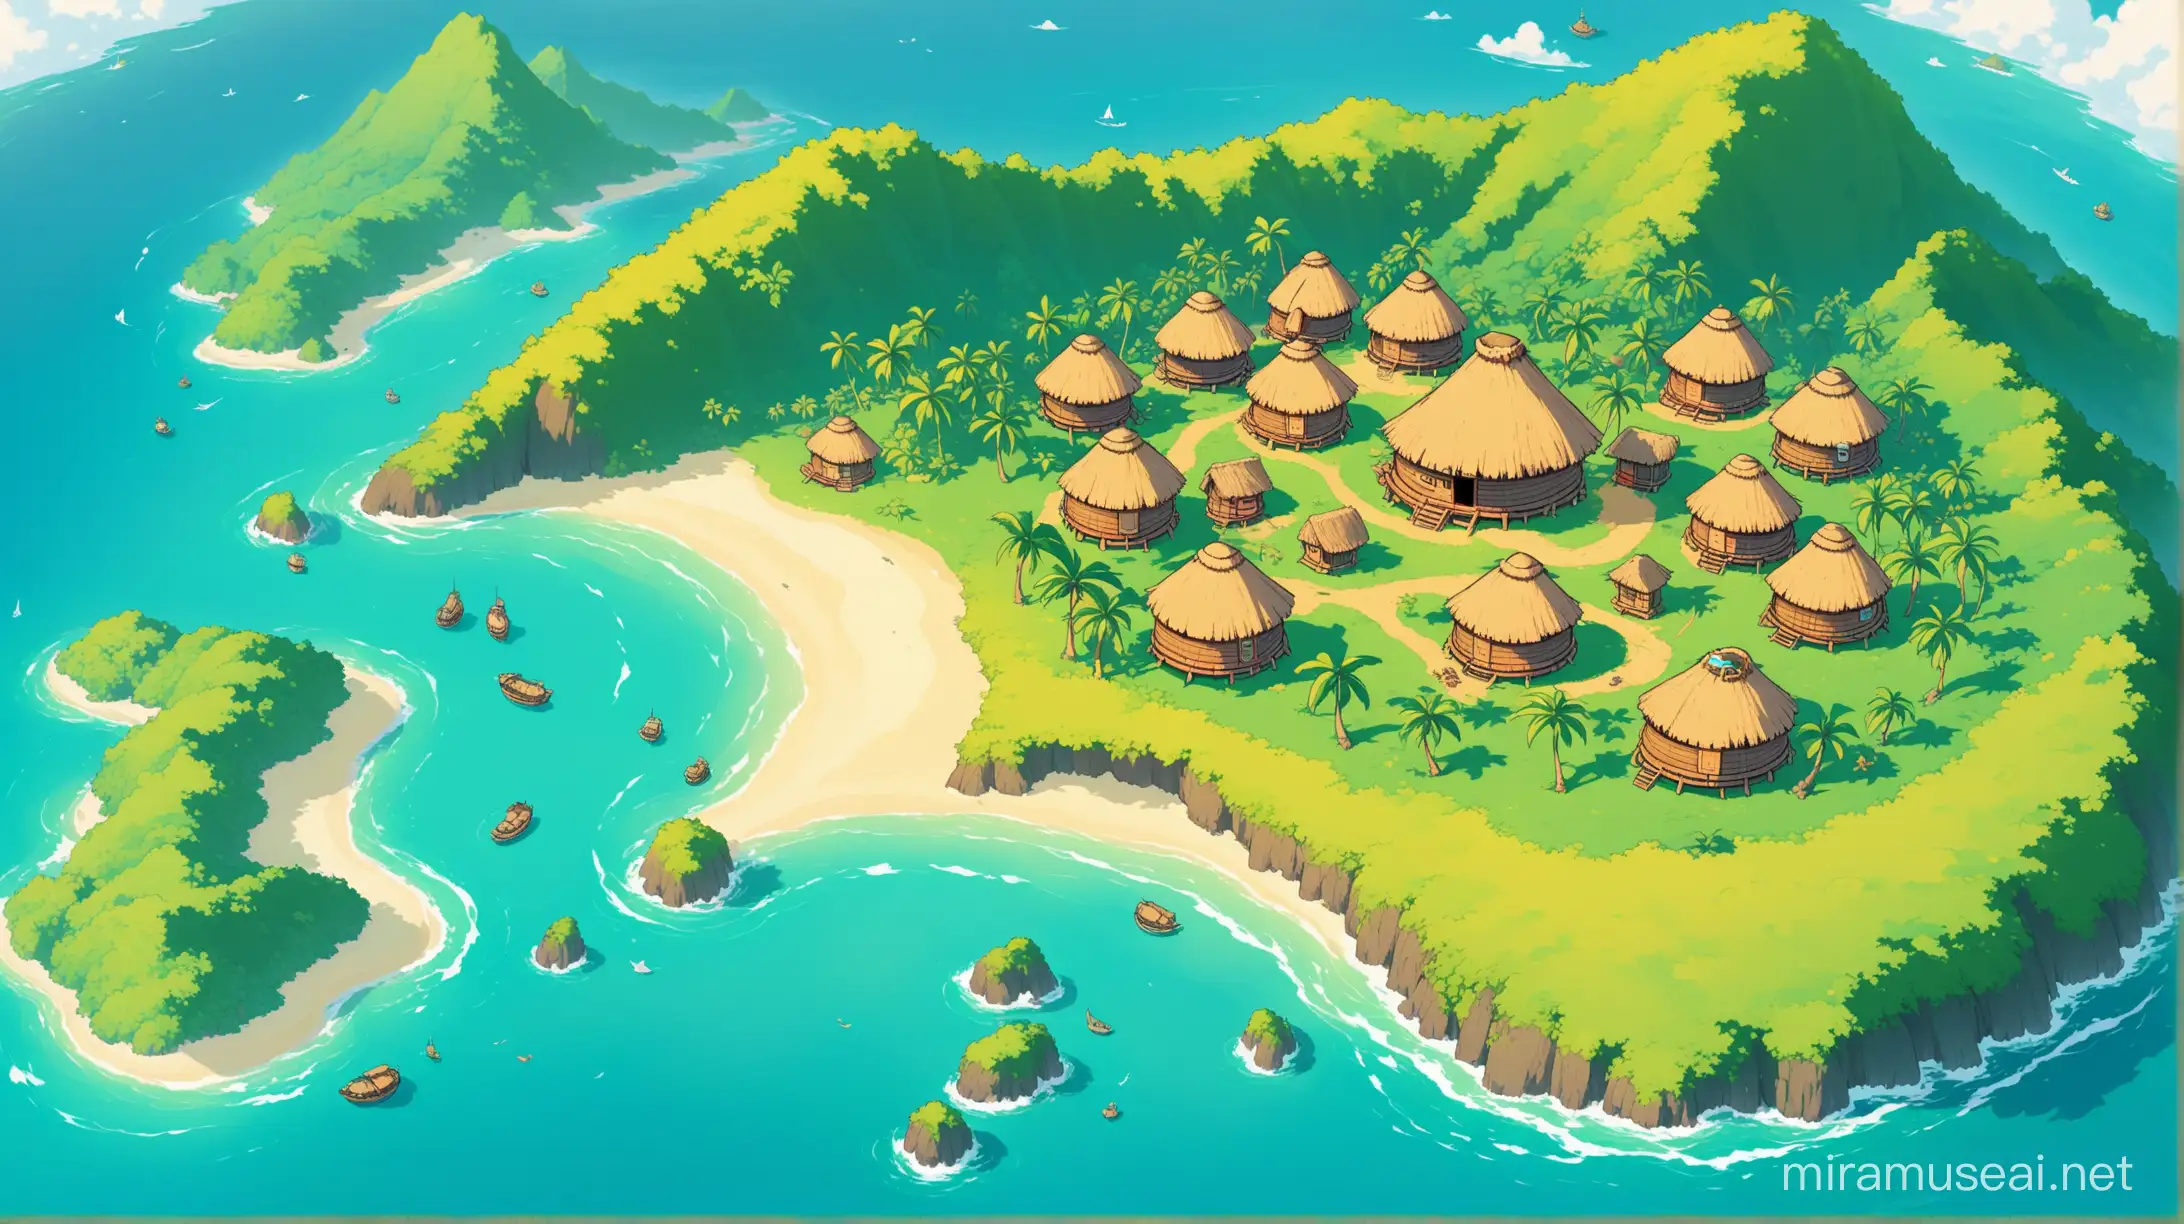 Prise de vue aérienne un peu de côté d'une île, avec une montagne avec des cases mélanésiennes rondes, style dessin en couleur, avec une inspiration wakfu